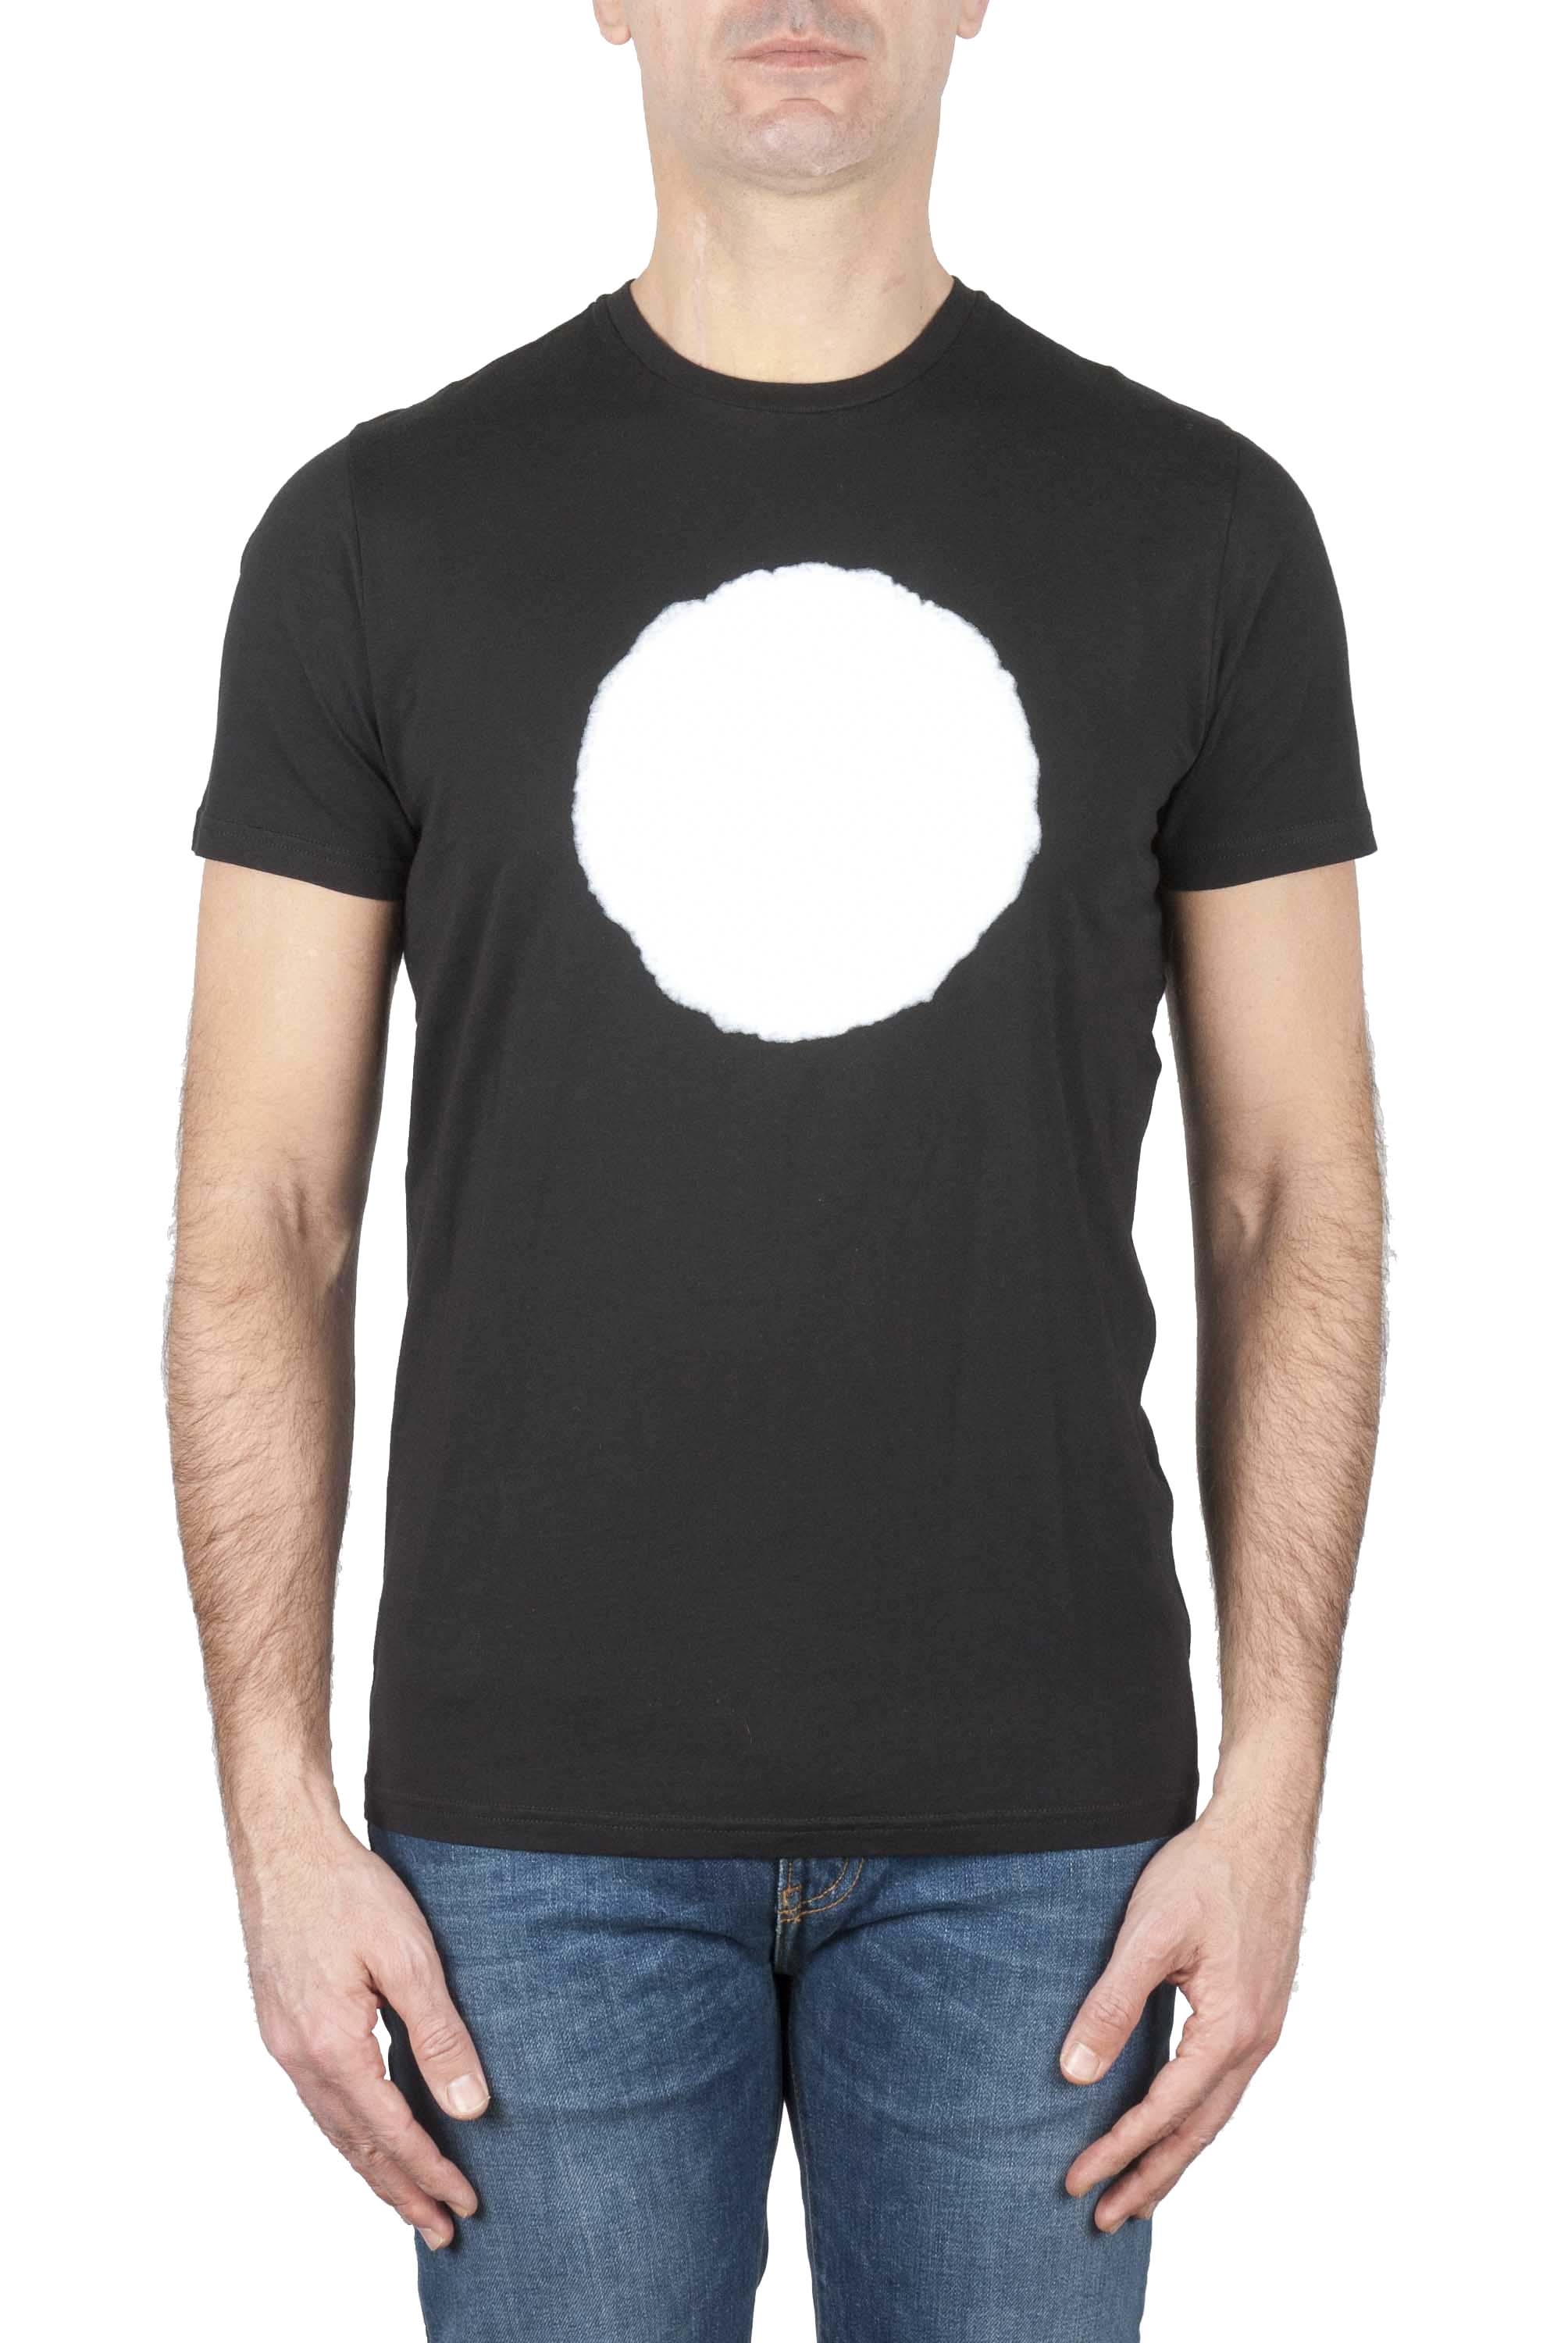 SBU 01166 Clásica camiseta de cuello redondo manga corta de algodón blanca y negra gráfica impresa 01